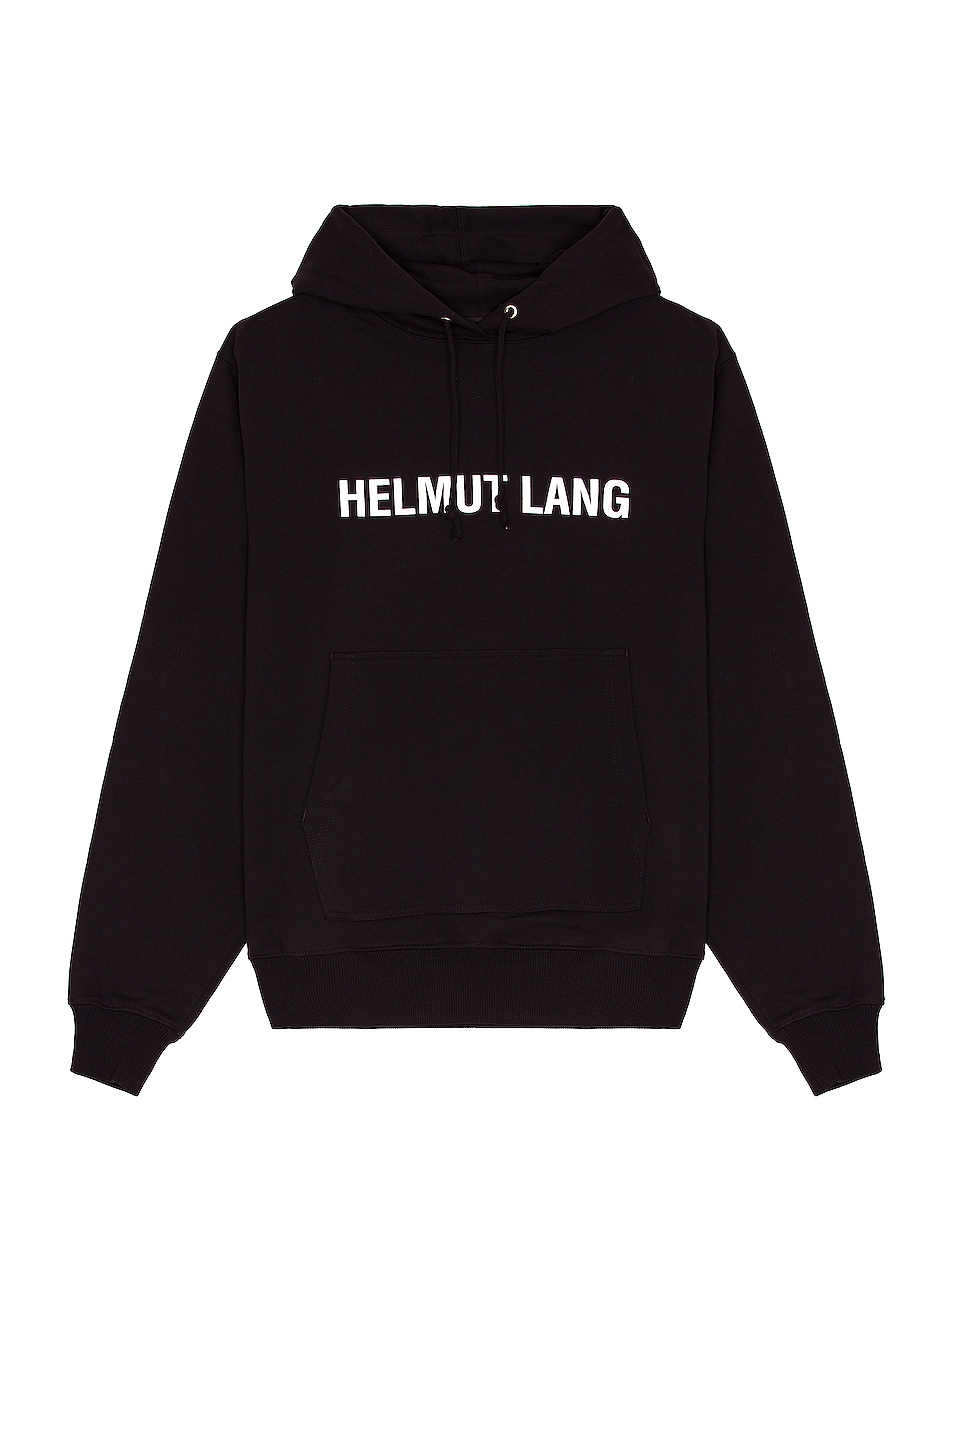 джинсы helmut lang размер 44 46 черный Худи Helmut Lang, черный